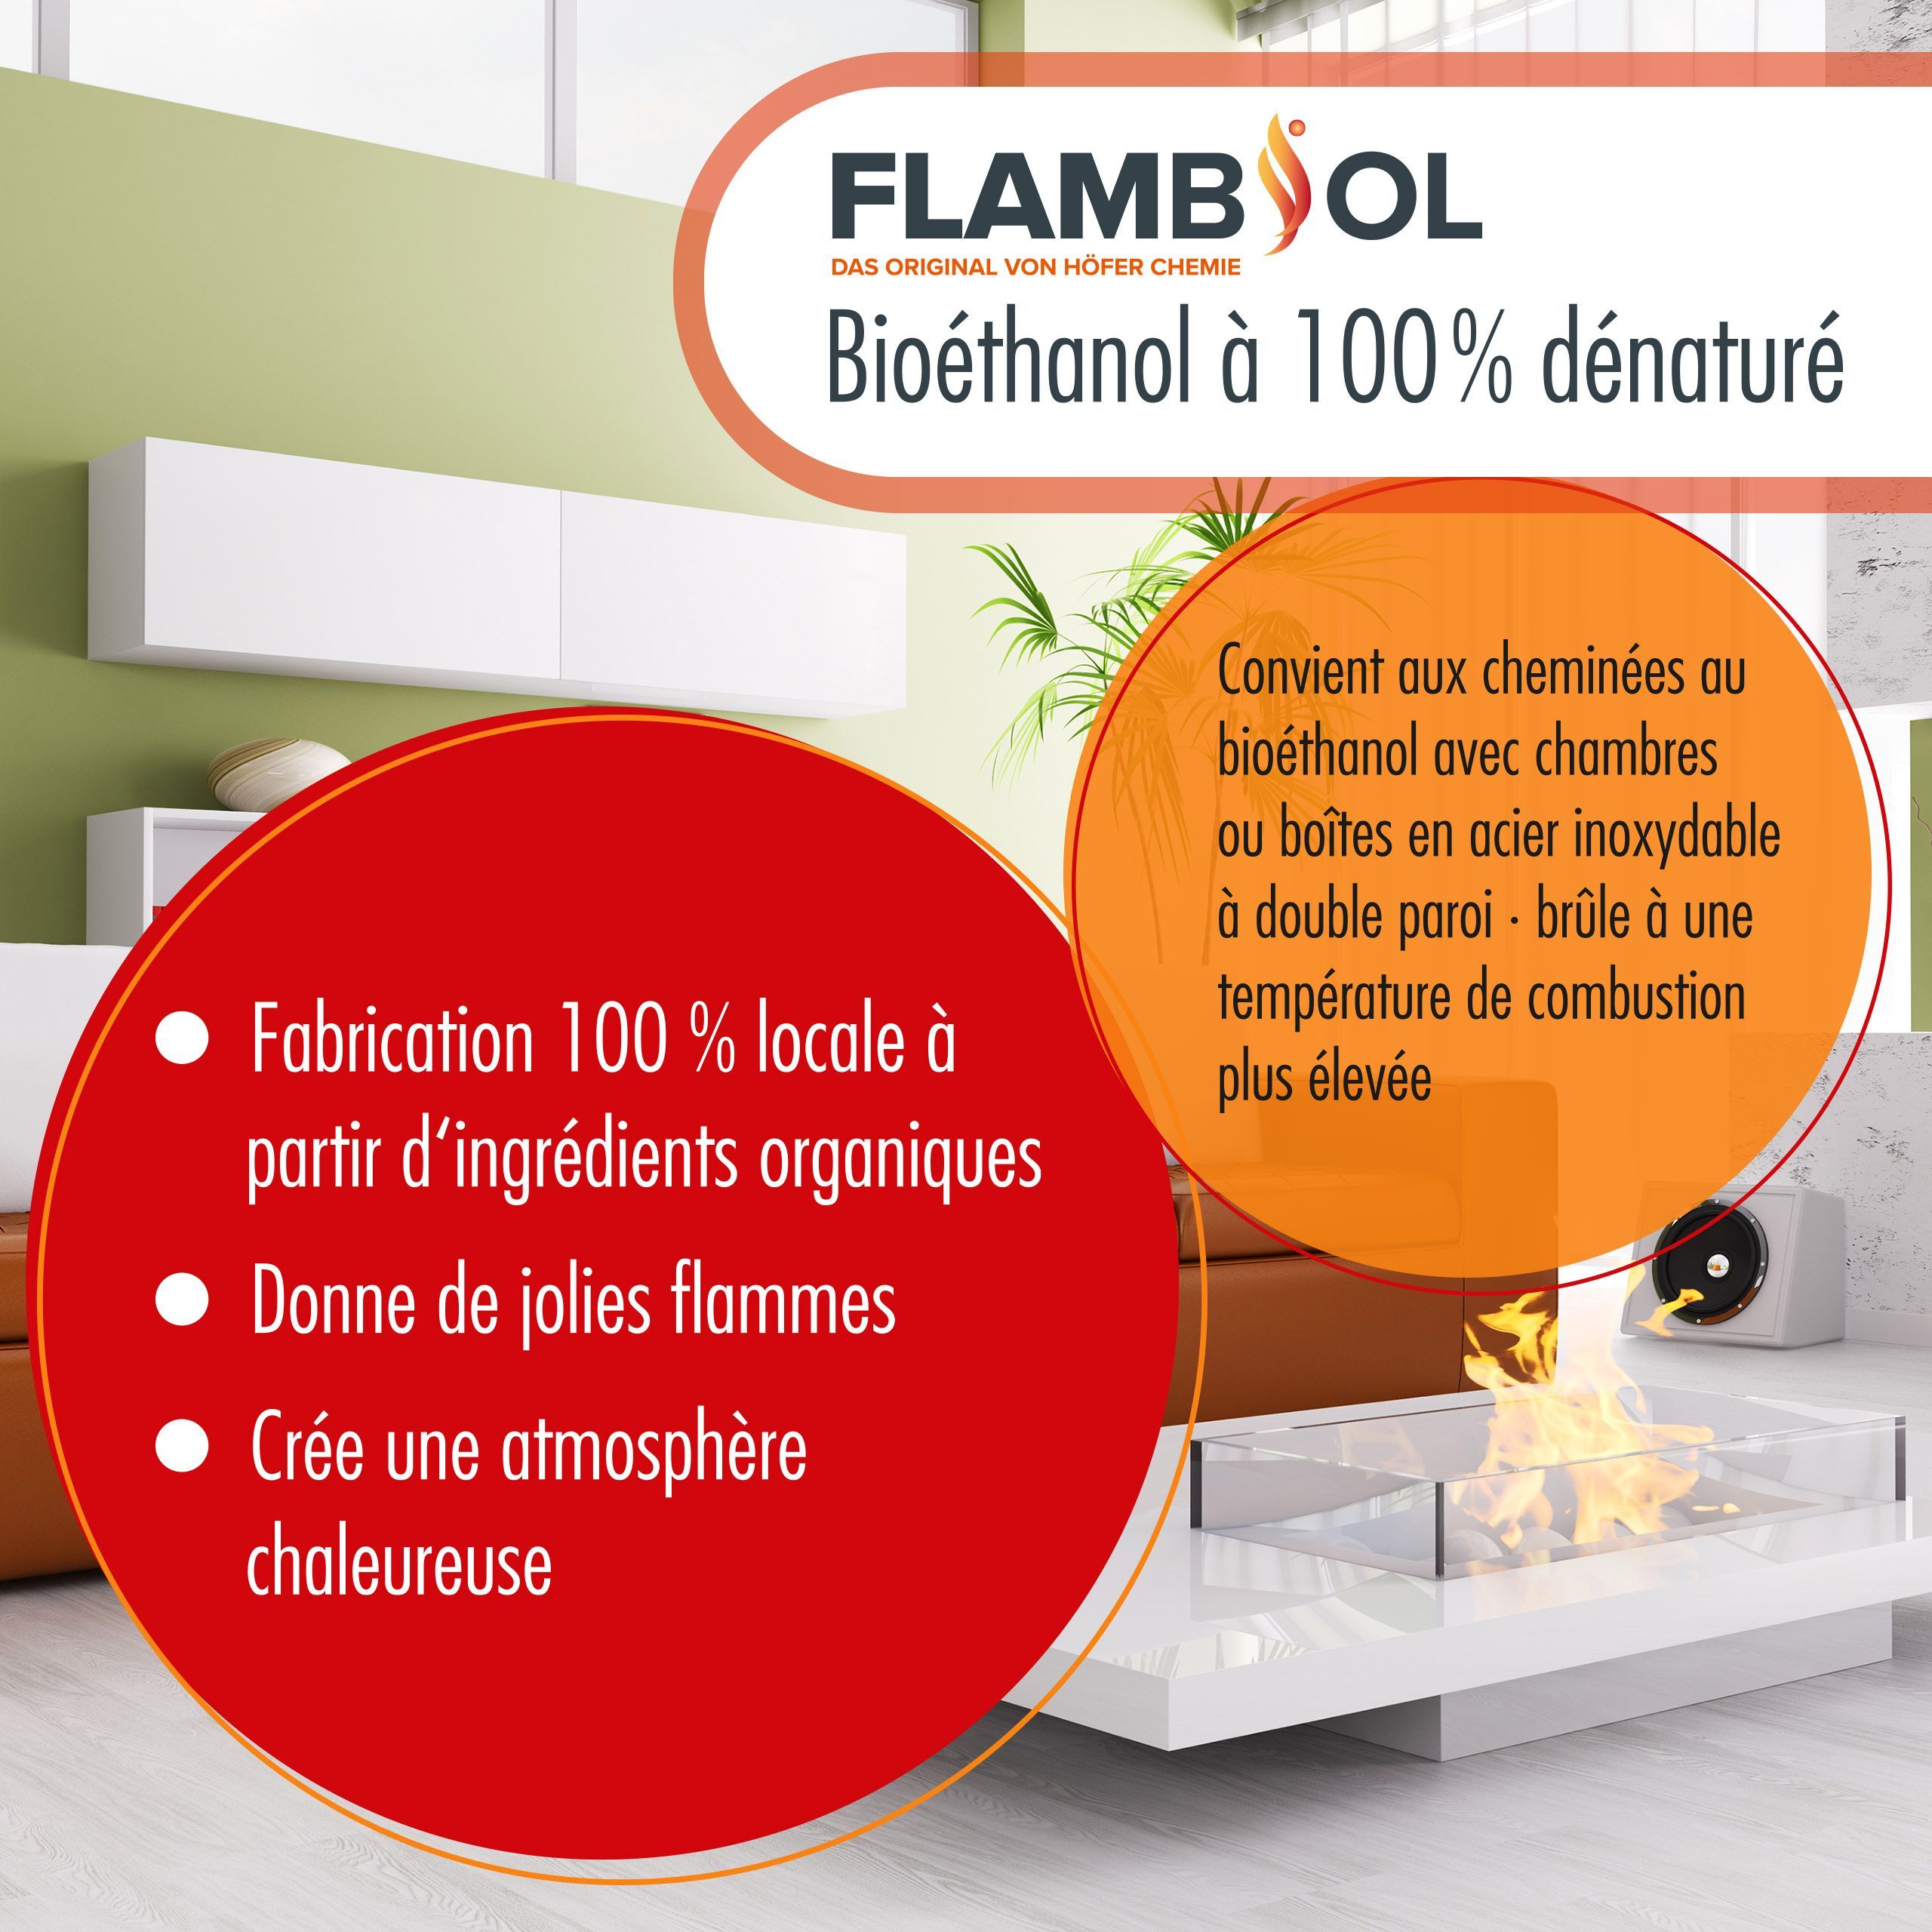 5 L FLAMBIOL® Bioethanol 100 % Hochrein